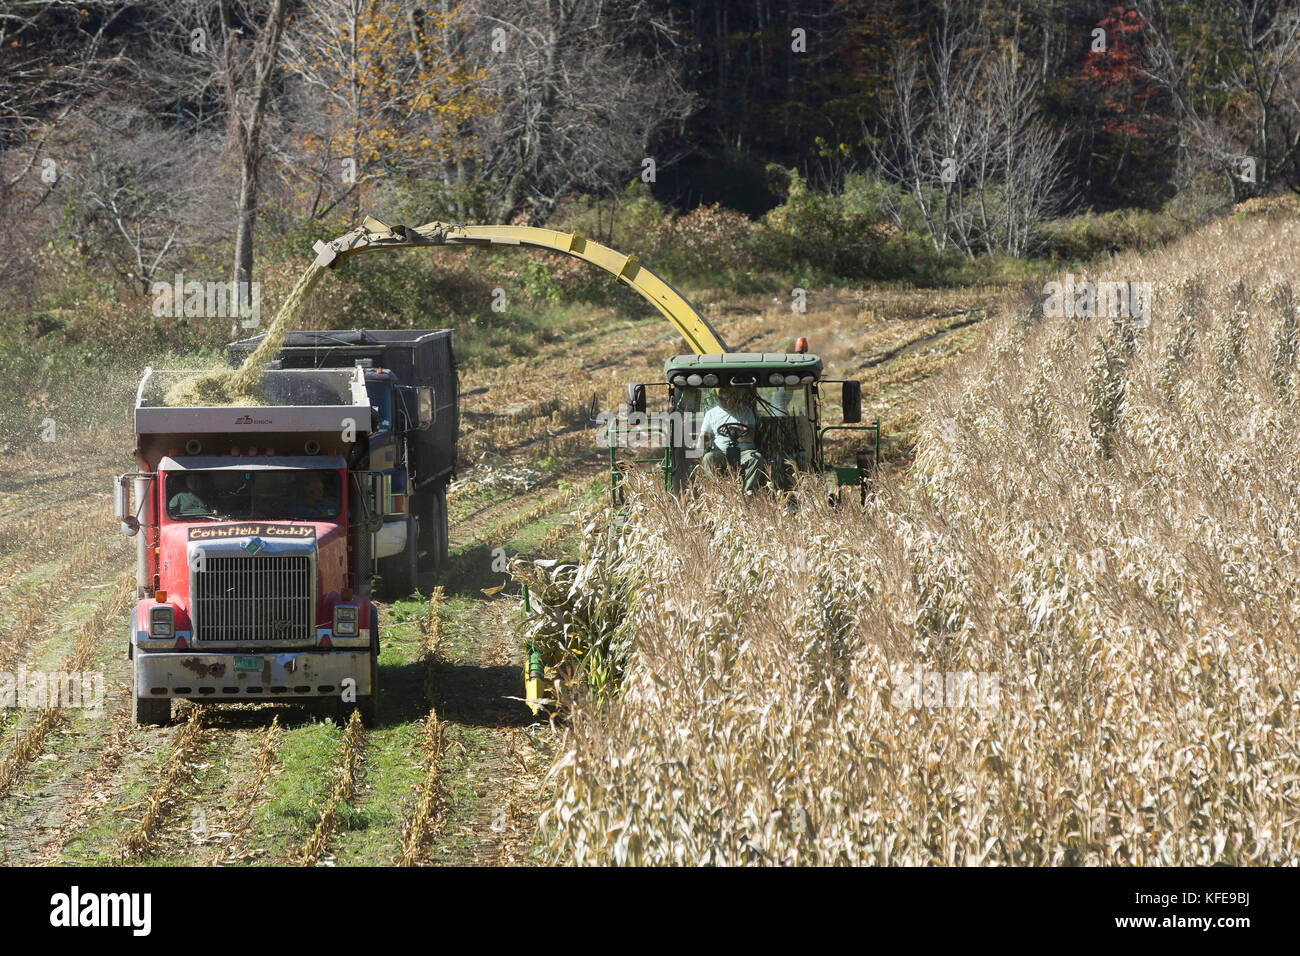 La récolte d'automne de l'staulks de maïs pour nourrir les bovins pendant l'hiver dans le Vermont, usa Banque D'Images